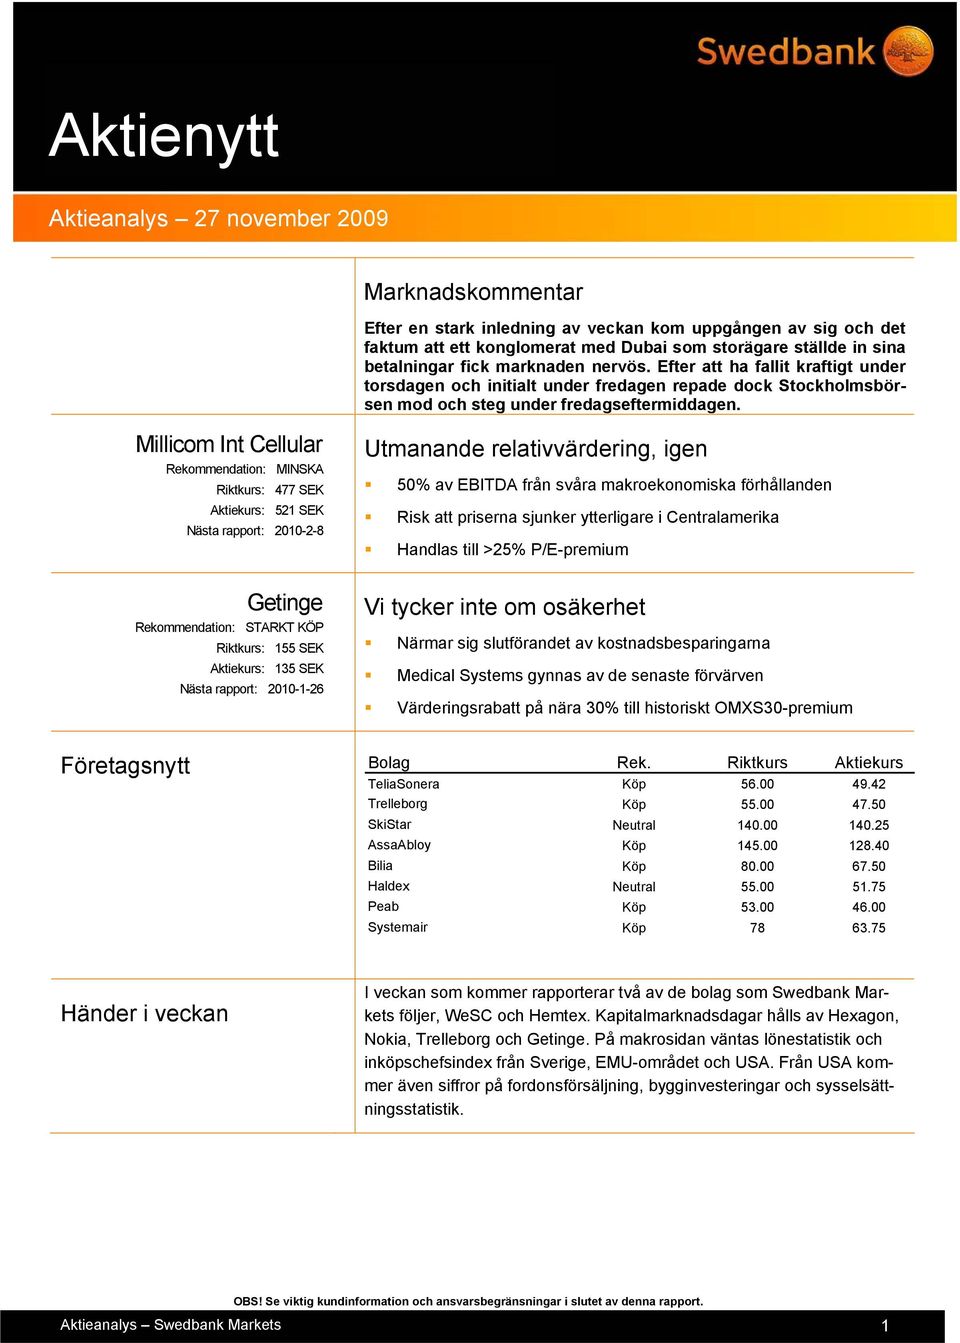 Millicom Int Cellular Rekommendation: MINSKA Riktkurs: 477 SEK Aktiekurs: 521 SEK Nästa rapport: 2010-2-8 Utmanande relativvärdering, igen 50% av EBITDA från svåra makroekonomiska förhållanden Risk